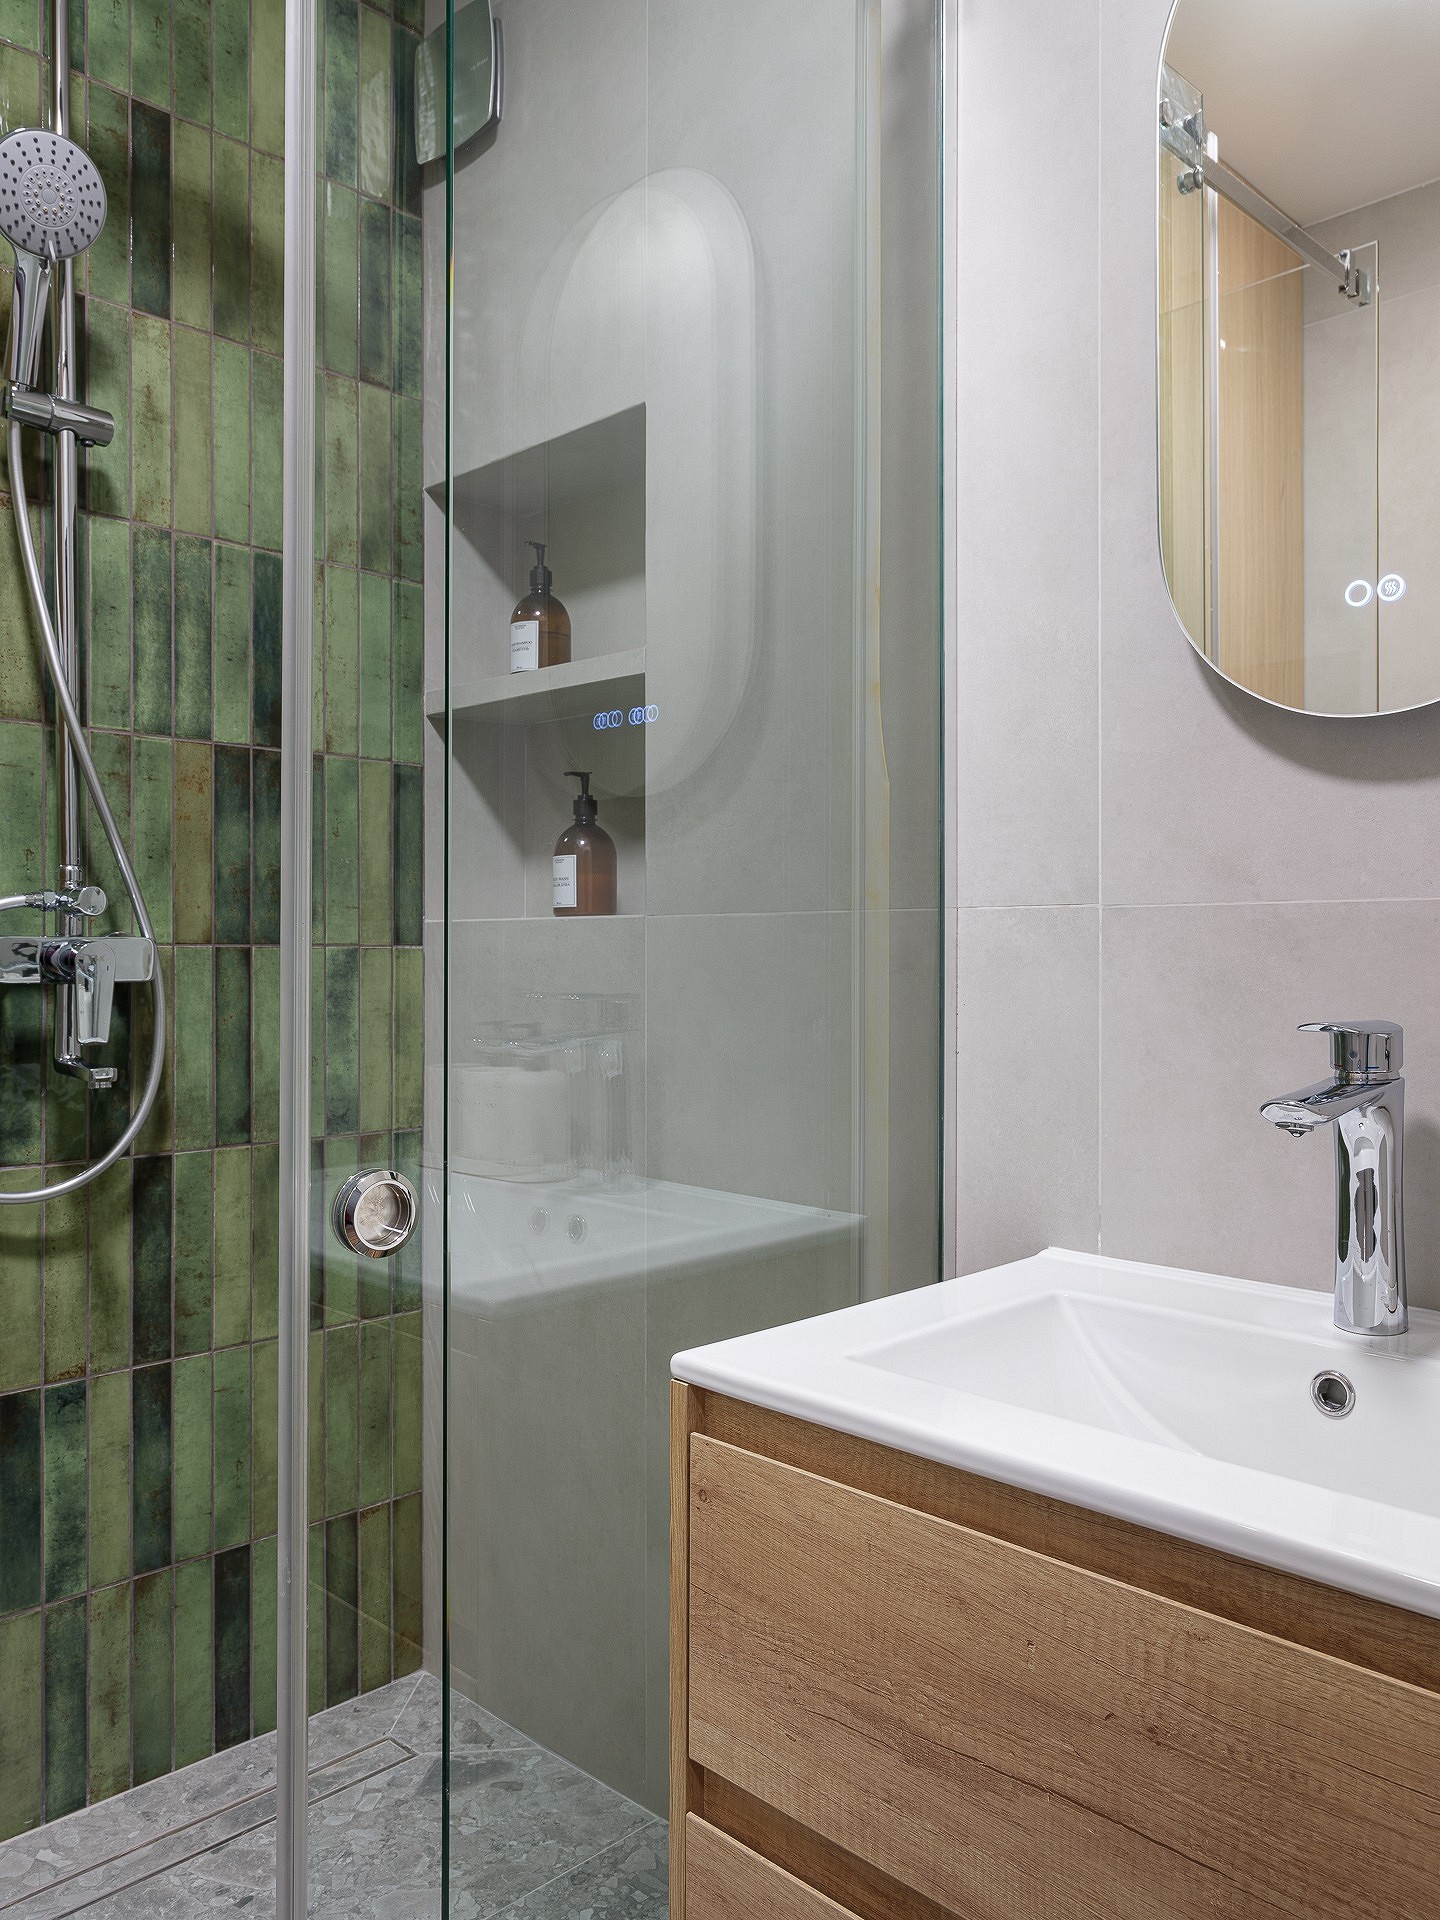 До и после: 7 ванных комнат от дизайнеров, которые теперь не узнать9